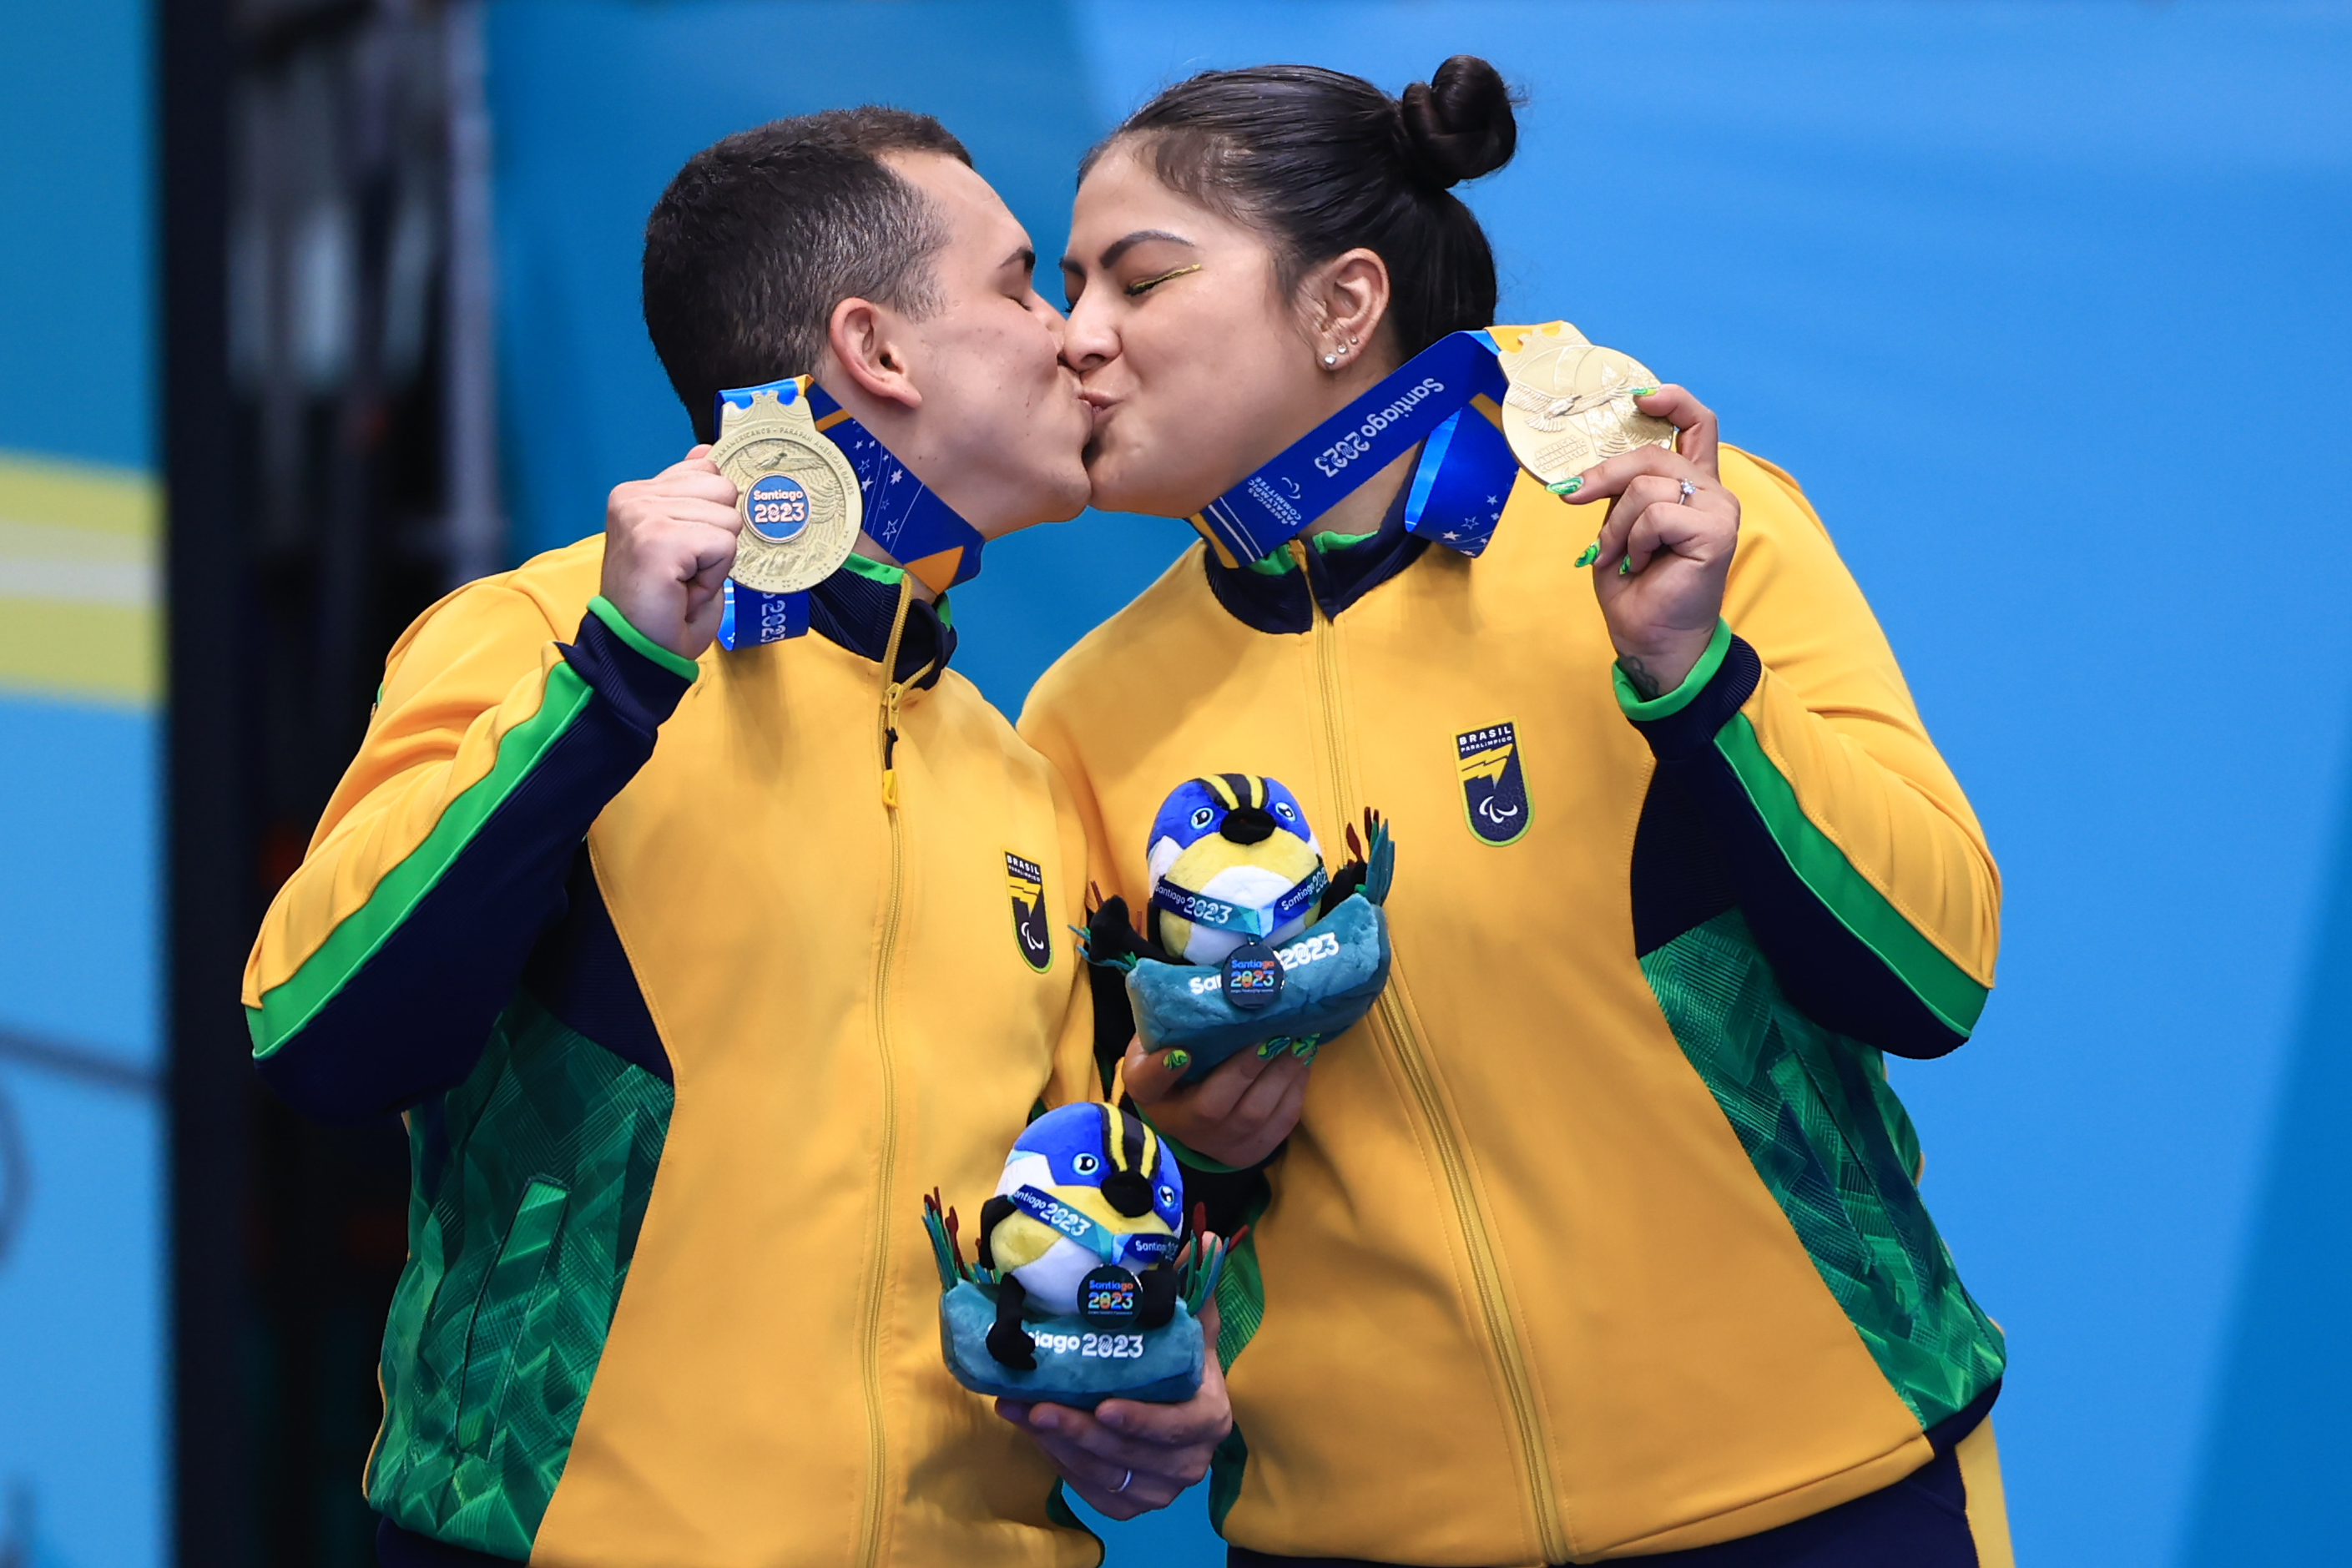 Delegação somou 343 medalhas, sendo 156 ouros, 98 pratas e 89 bronzes, superando as marcas de Lima 2019. Do total, 97,66% tiveram a digital do Bolsa Atleta